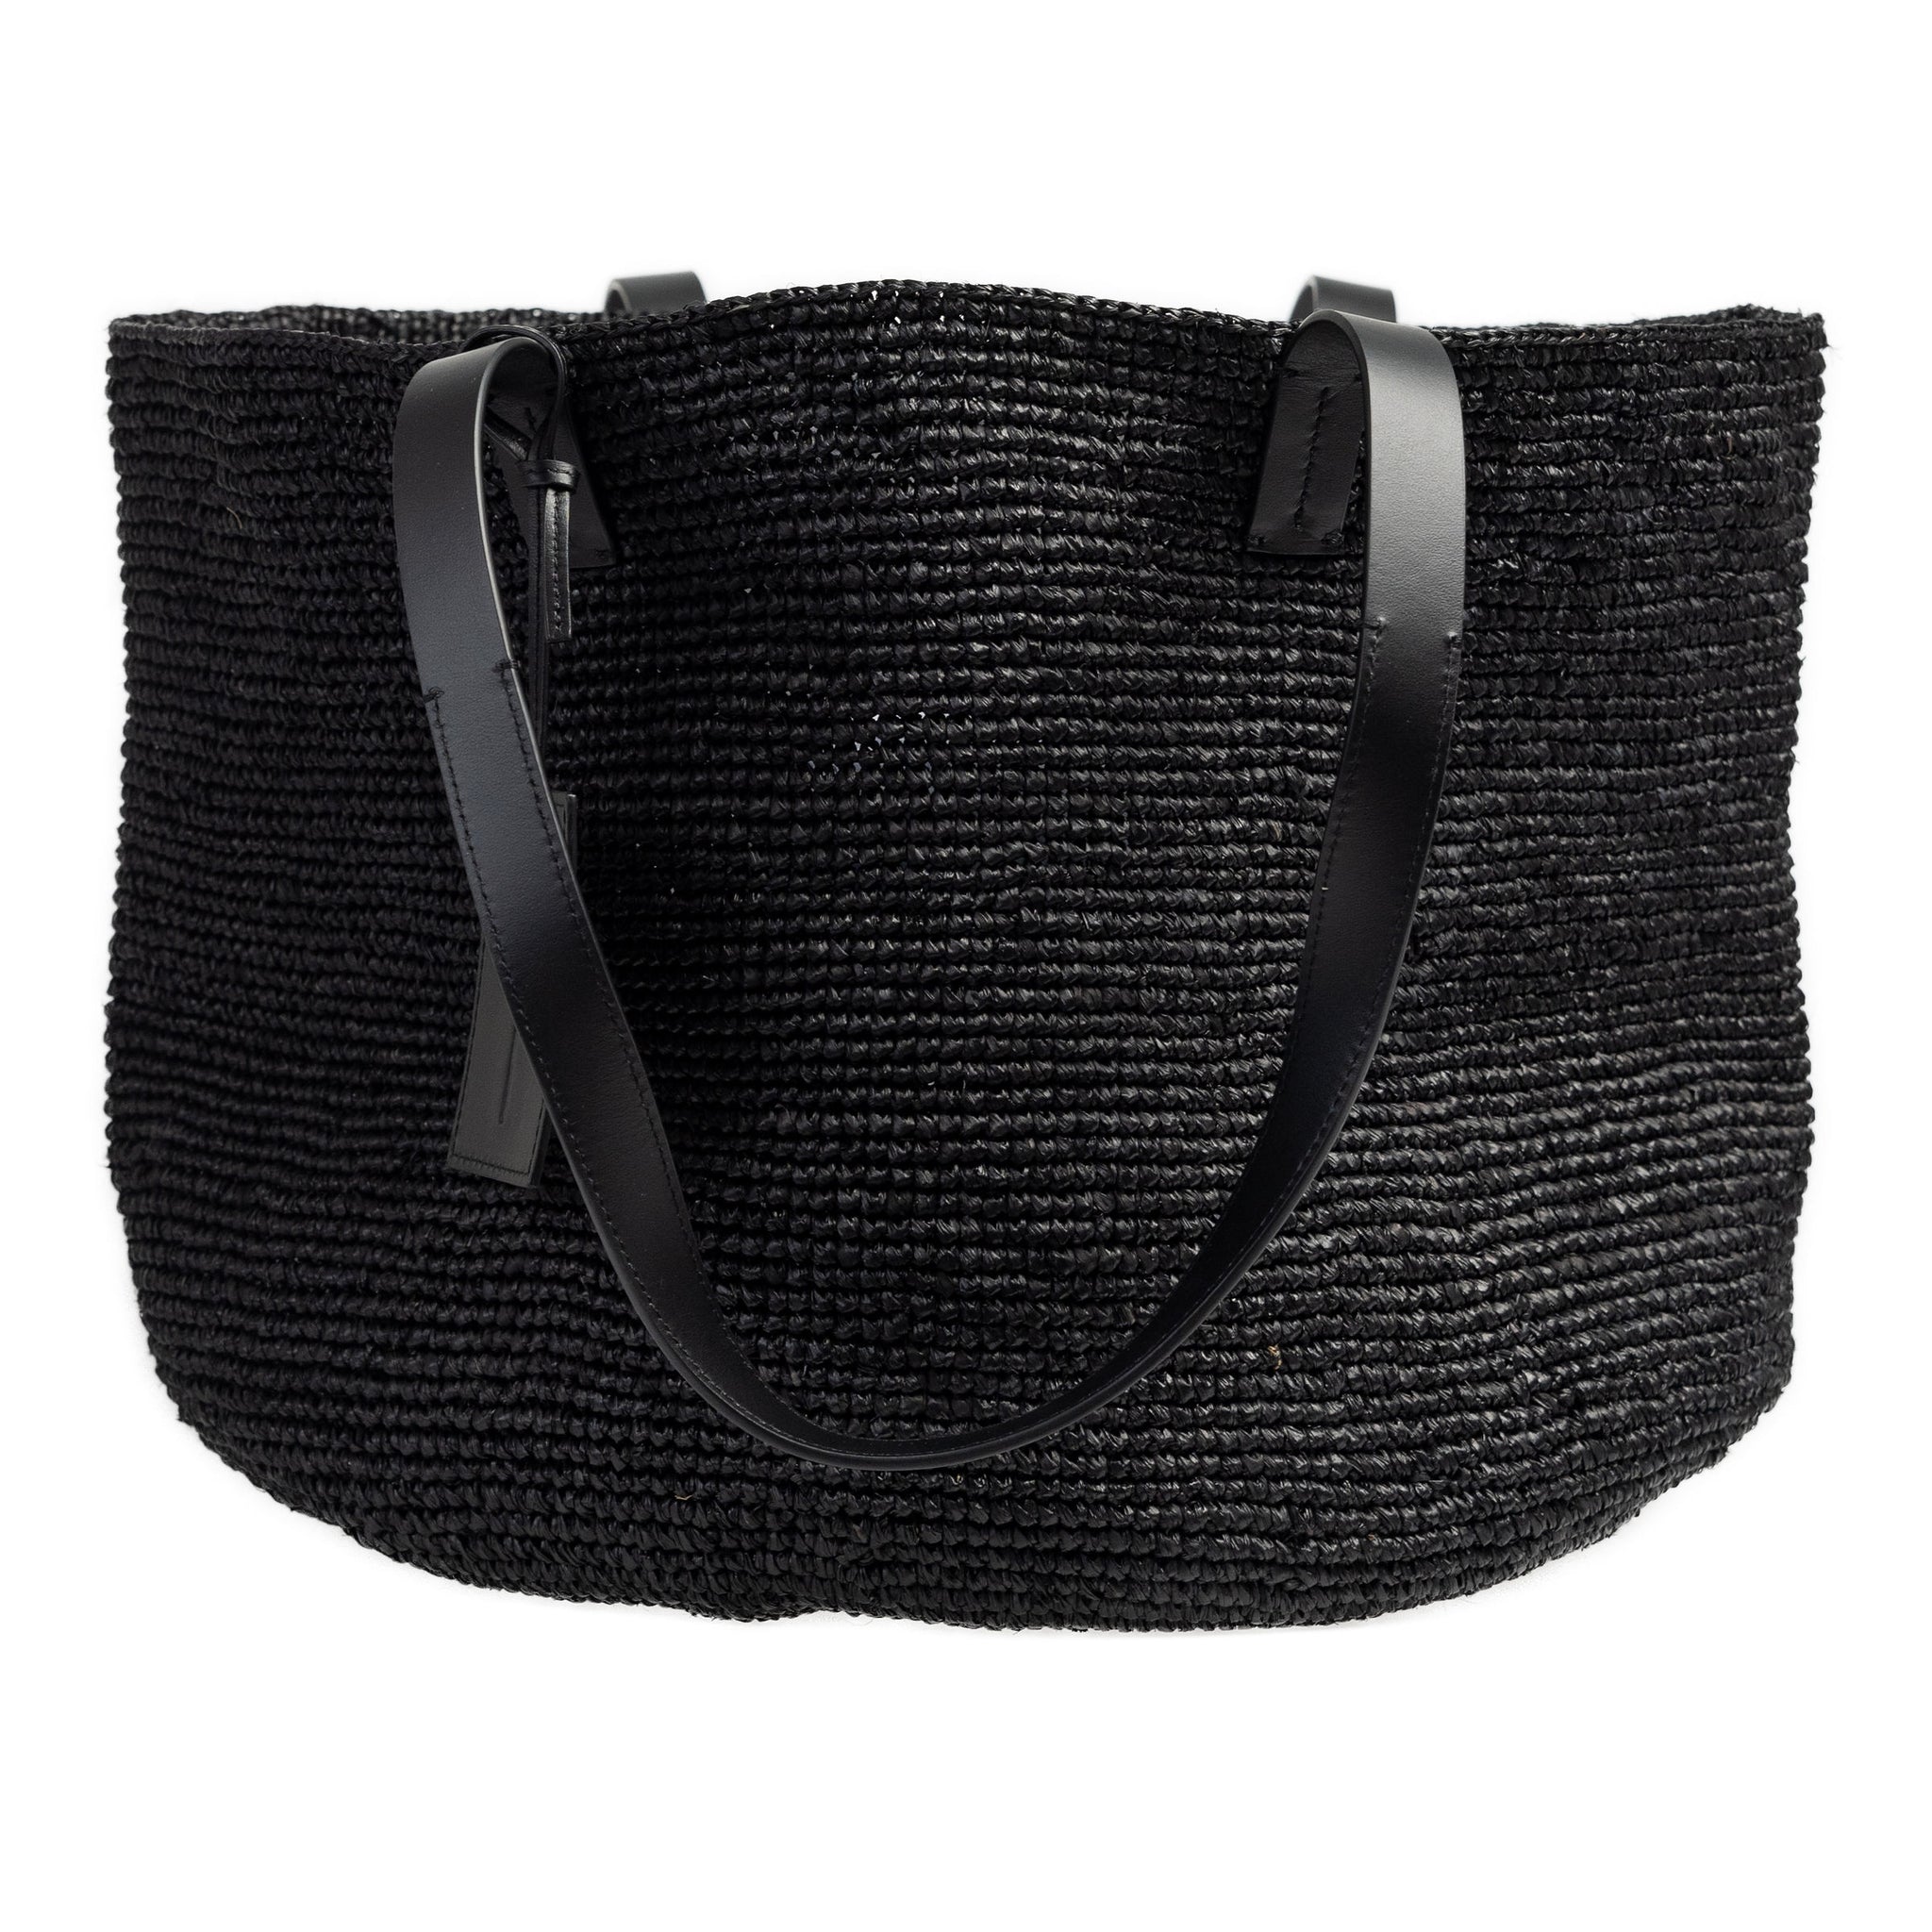 MANEBÍ Basket Bag in Natural Black Raffia